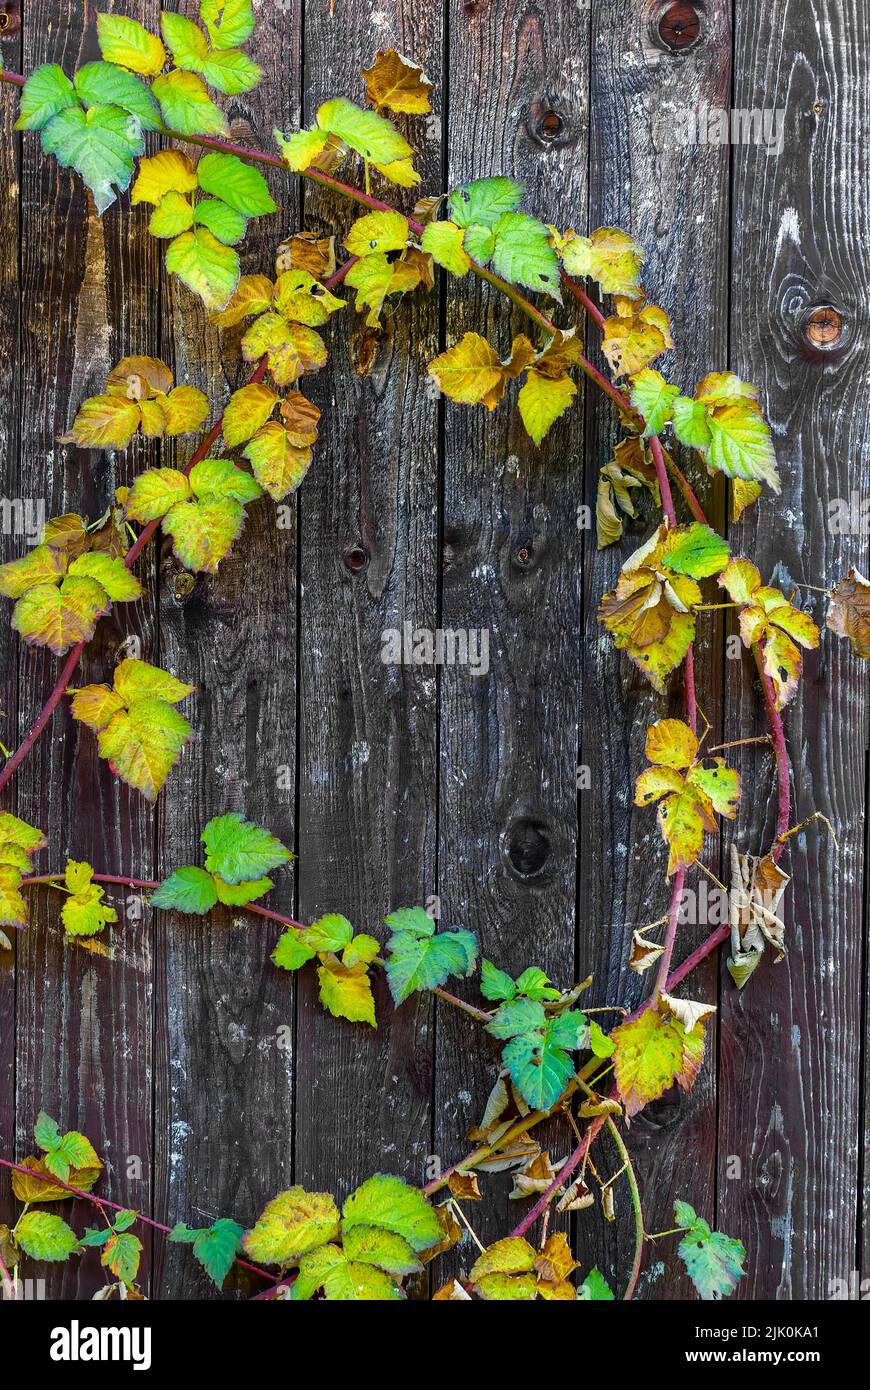 cartolina verticale d'autunno - foglie di tayberry d'autunno su sfondo di legno, dettagli d'autunno, cartolina d'autunno, carta da parati verticale Foto Stock